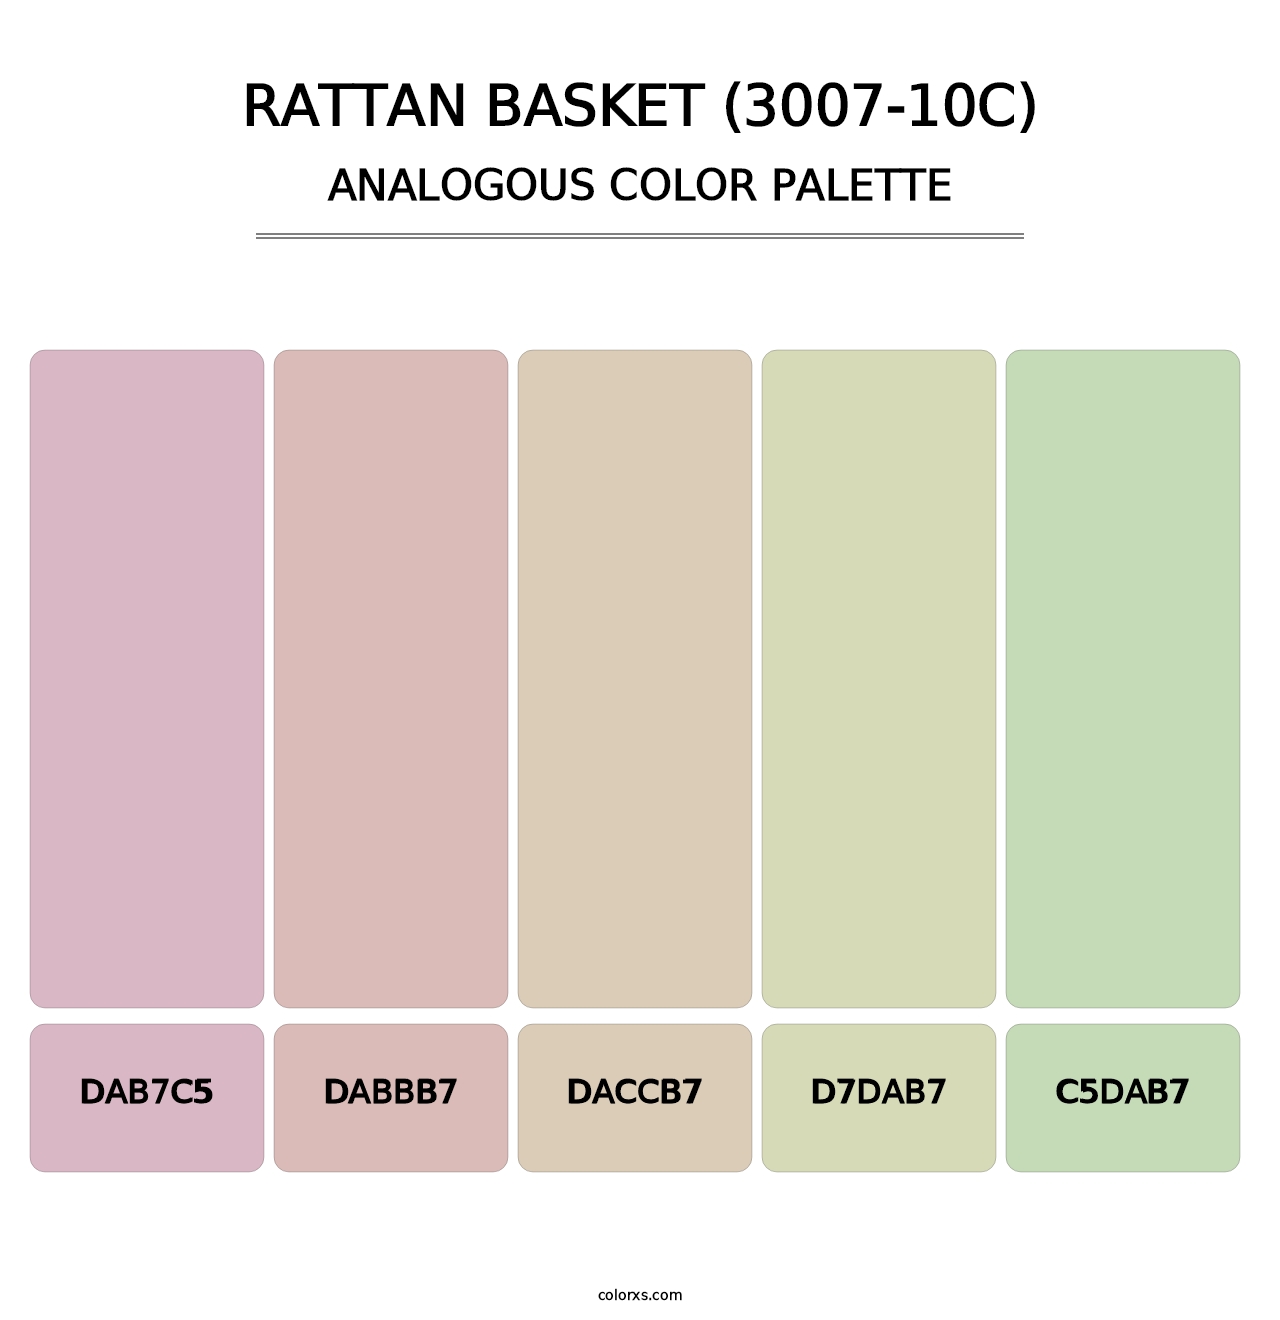 Rattan Basket (3007-10C) - Analogous Color Palette